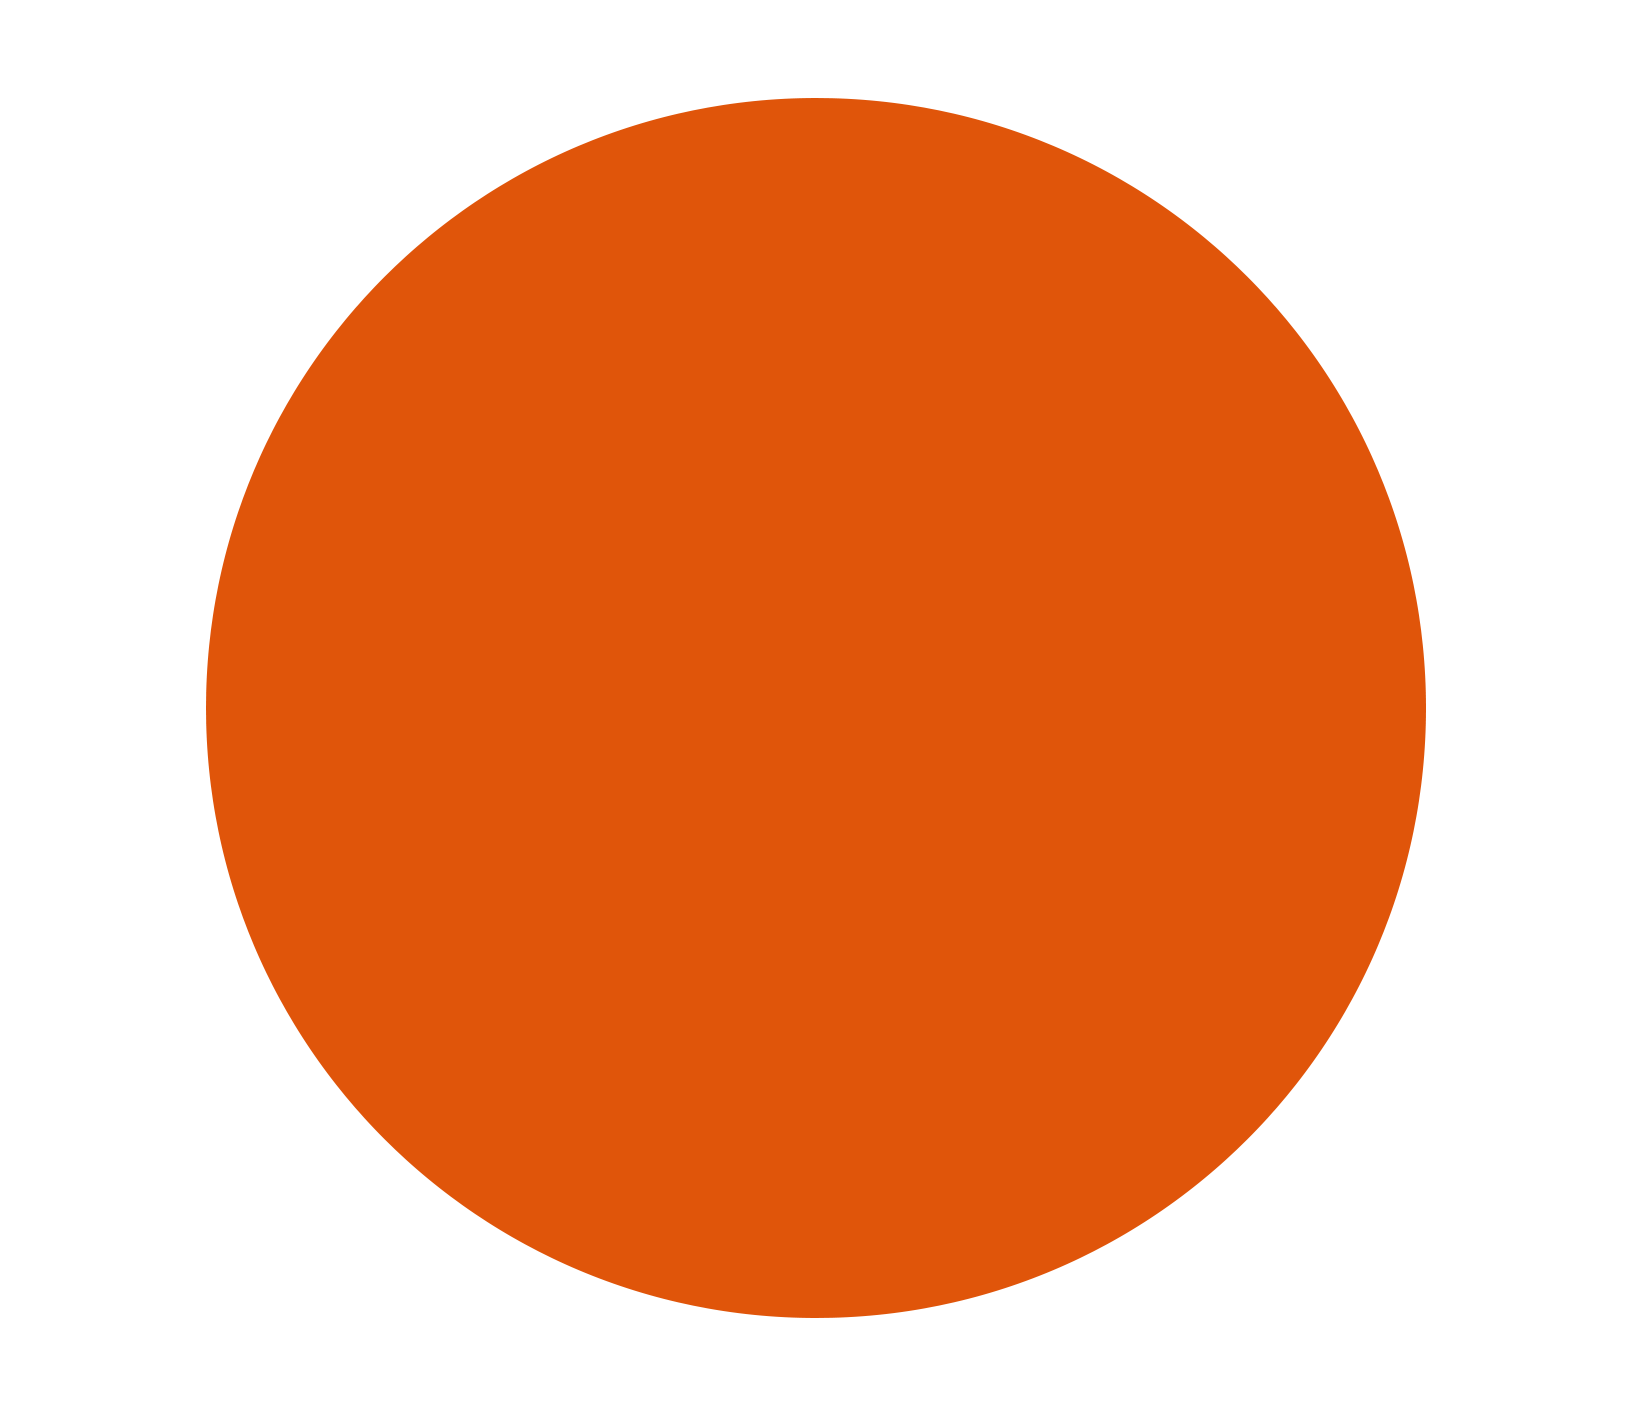 Red and Orange Circle Logo - circle